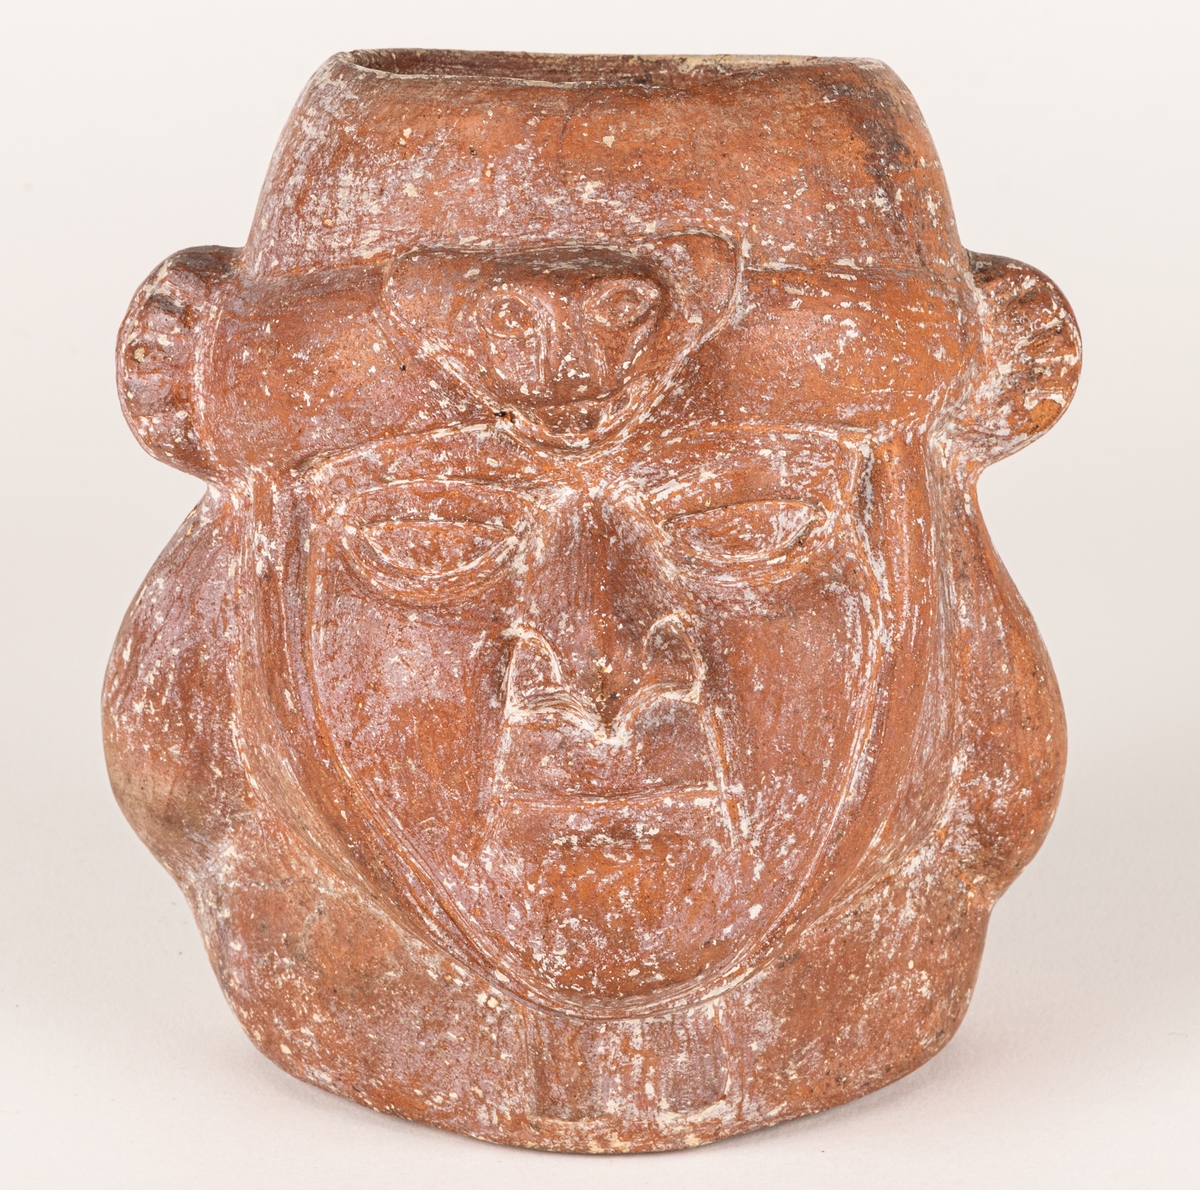 Gravkärl, av rödbrun lera med kraftig relief i form av ett ansikte. Ova öppning upptil. Inkaiskt gravkärl.